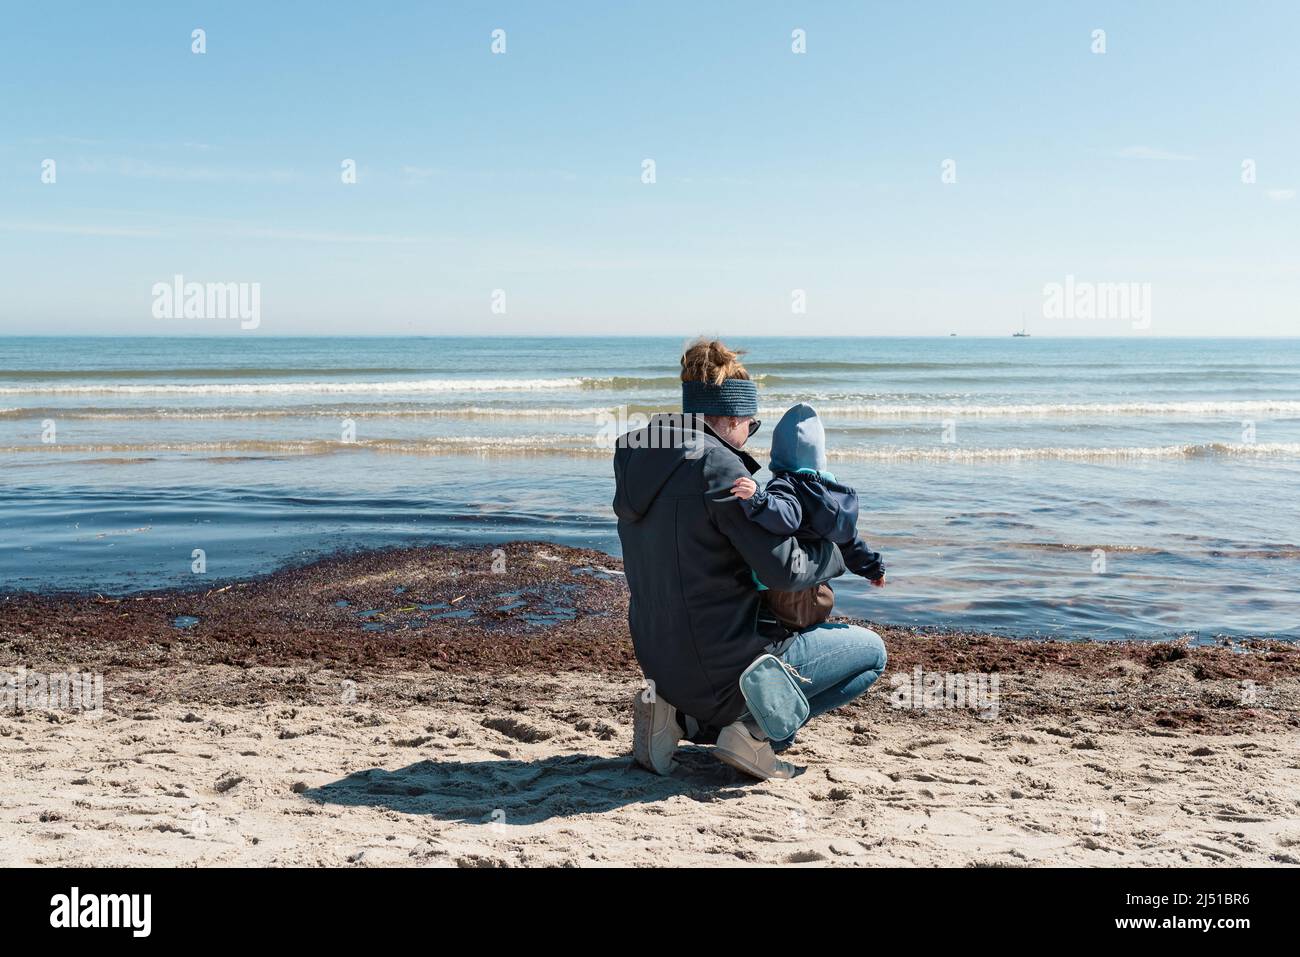 Rückansicht der Mutter, die ein Kleinkind am Strand hält, gegen das blaue Meer und den klaren blauen Himmel Stockfoto